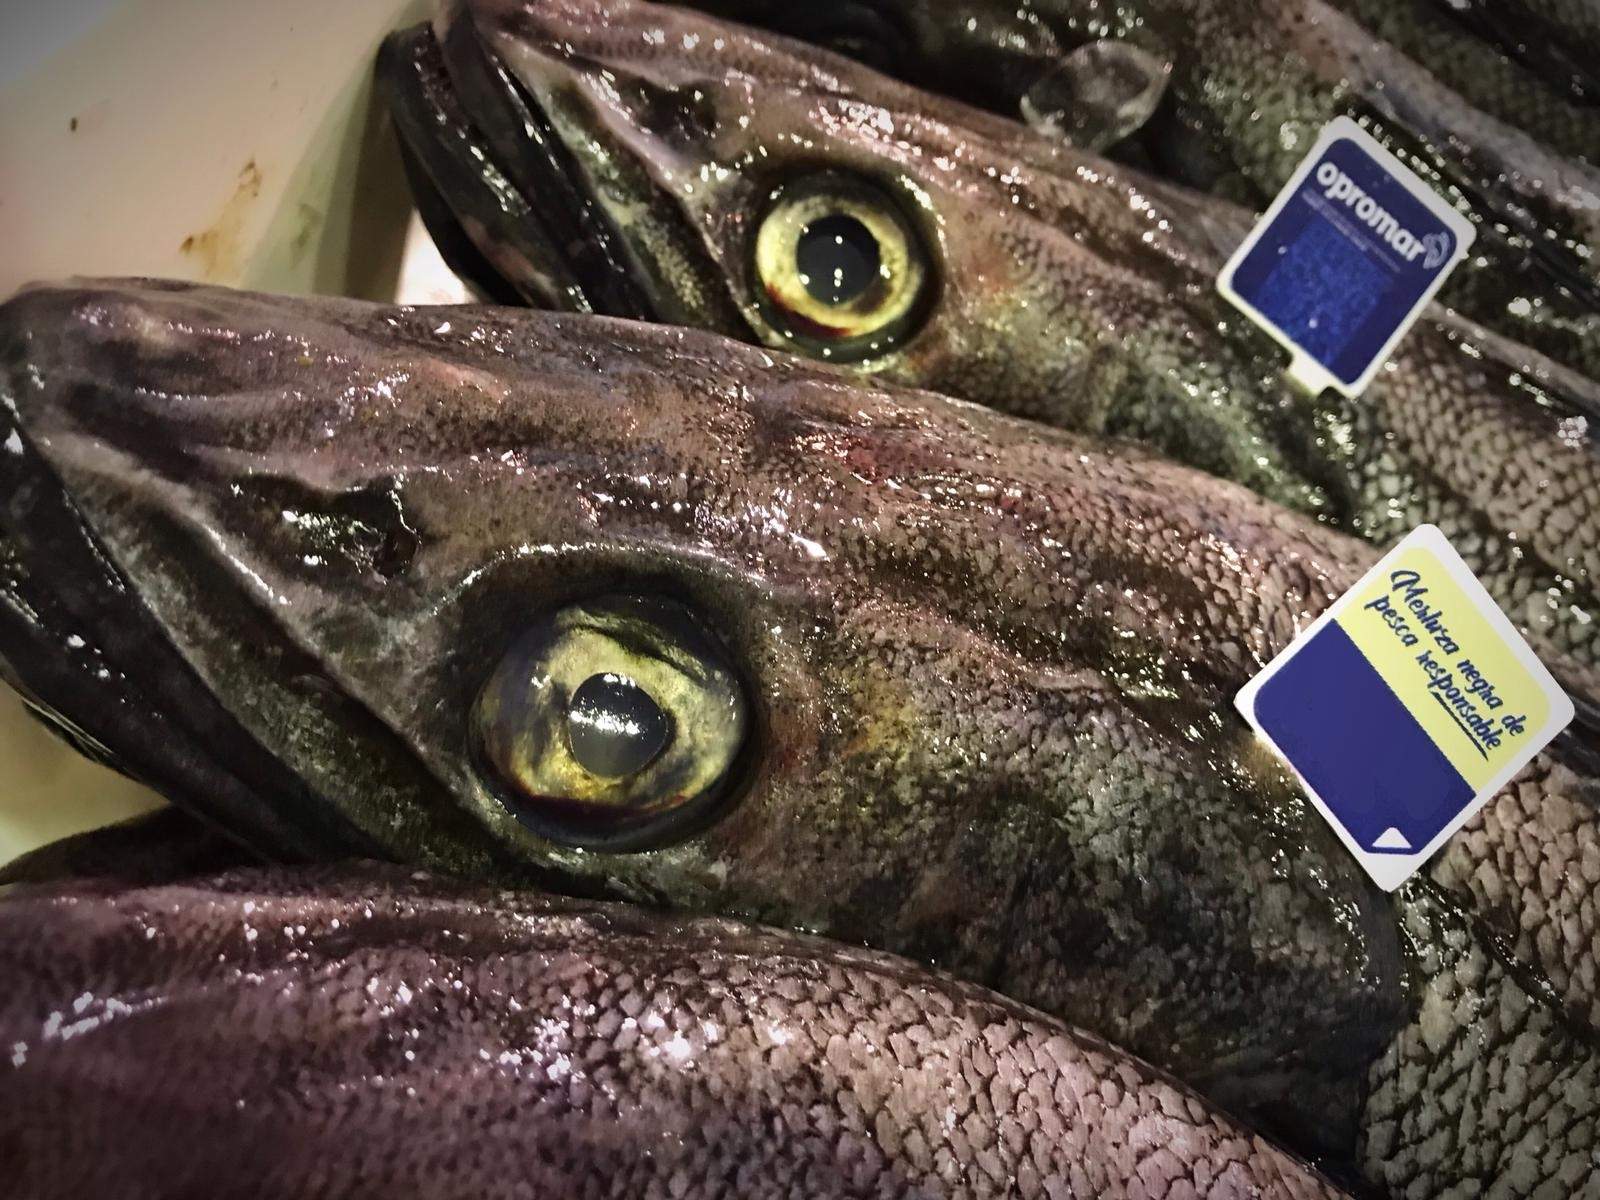 Alerta sanitària "greu" a l'estat espanyol per un peix amb anisakis procedent del Marroc